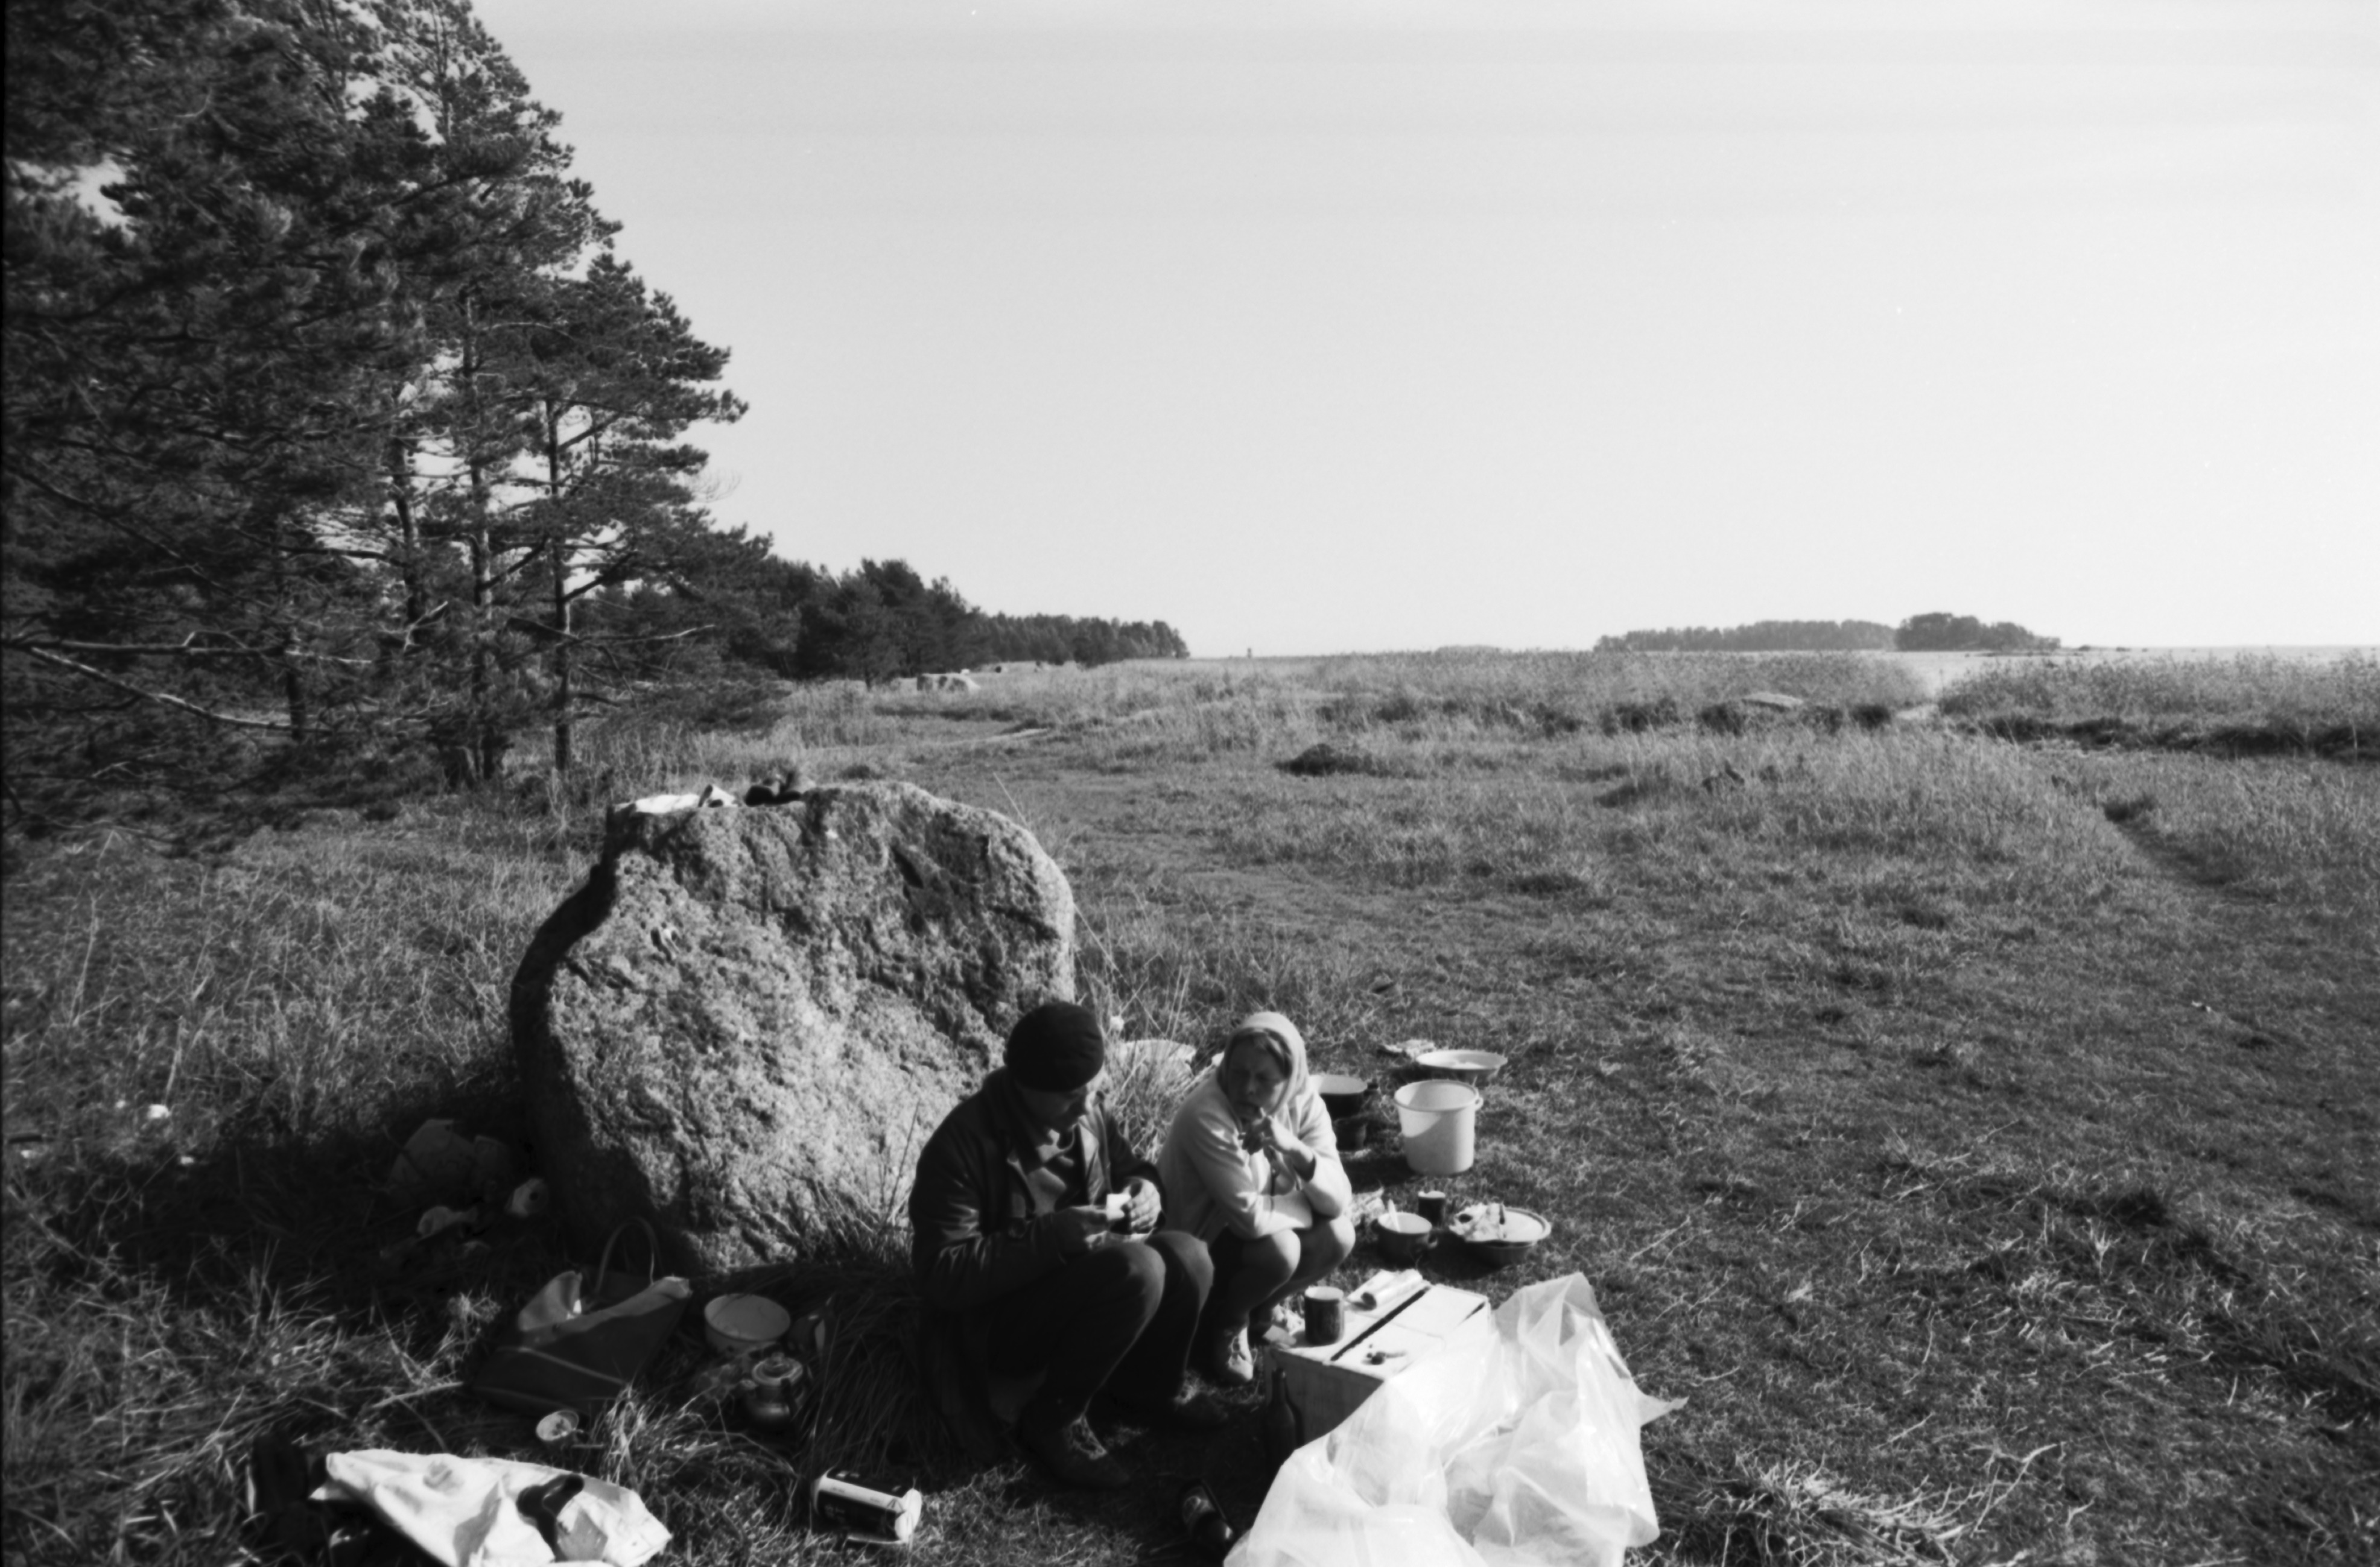 Kallahdenniemi. Mies ja nainen ruokailemassa kiven kupeessa Kallahdenniemen rannassa lähellä telttaa, jossa vielä syksyllä asustavat.